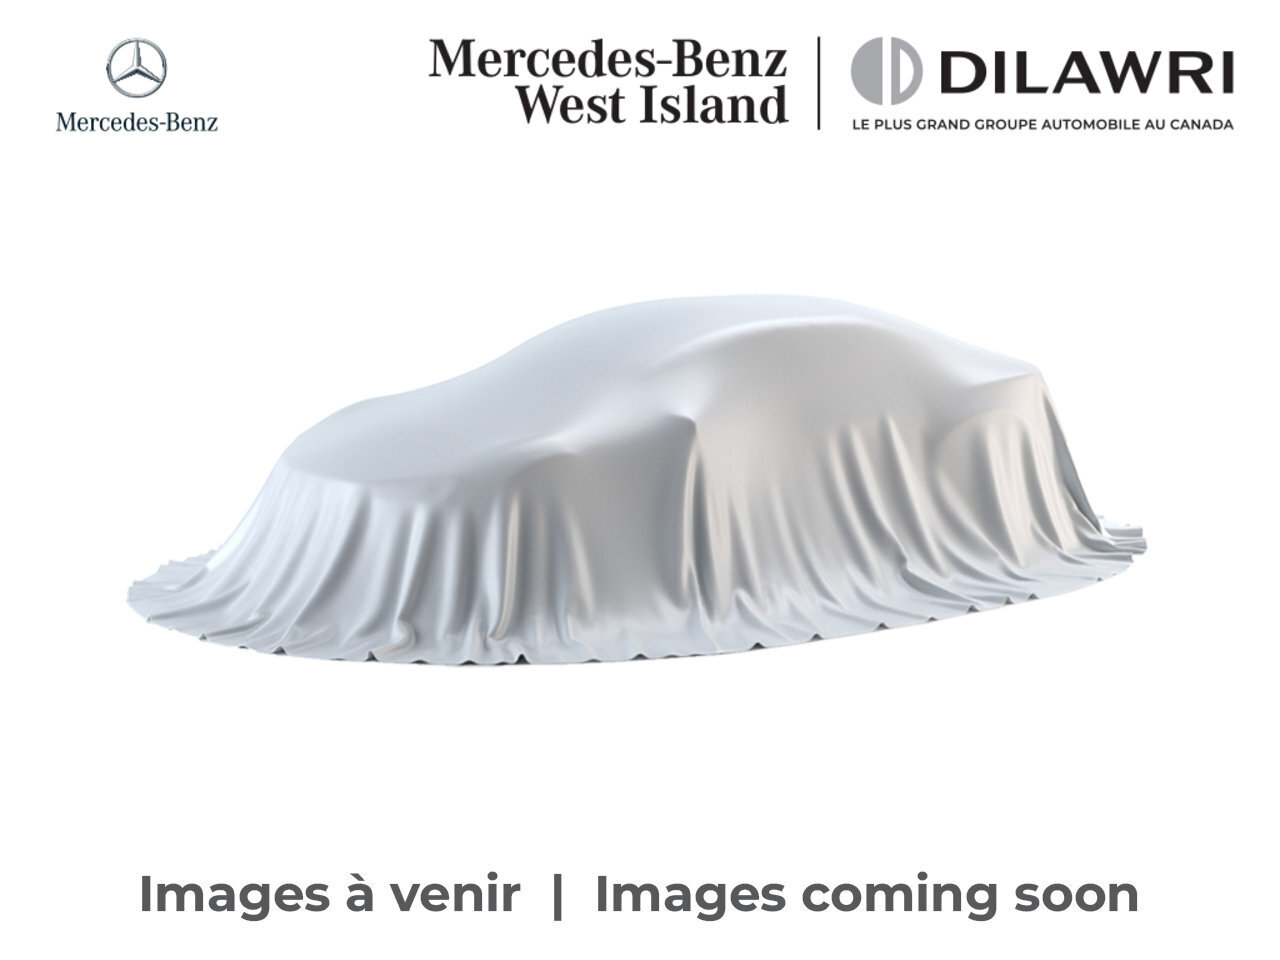 2022 Mercedes-Benz CLA250 4MATIC Coupe * Certifié * Certified Premium * Navi